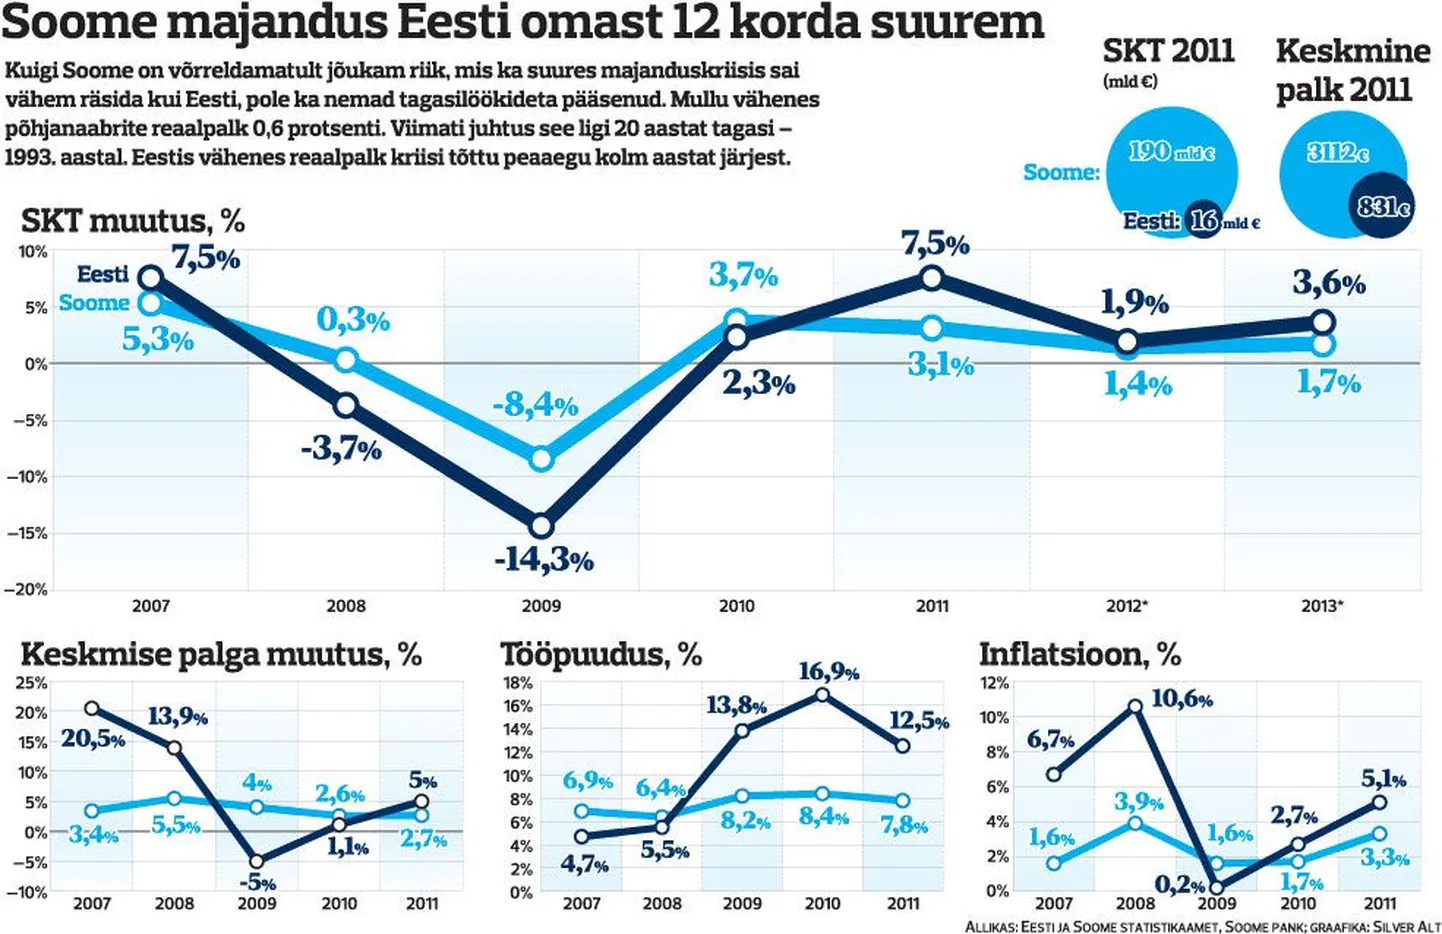 Soome majandus Eesti omast 12 korda suurem.